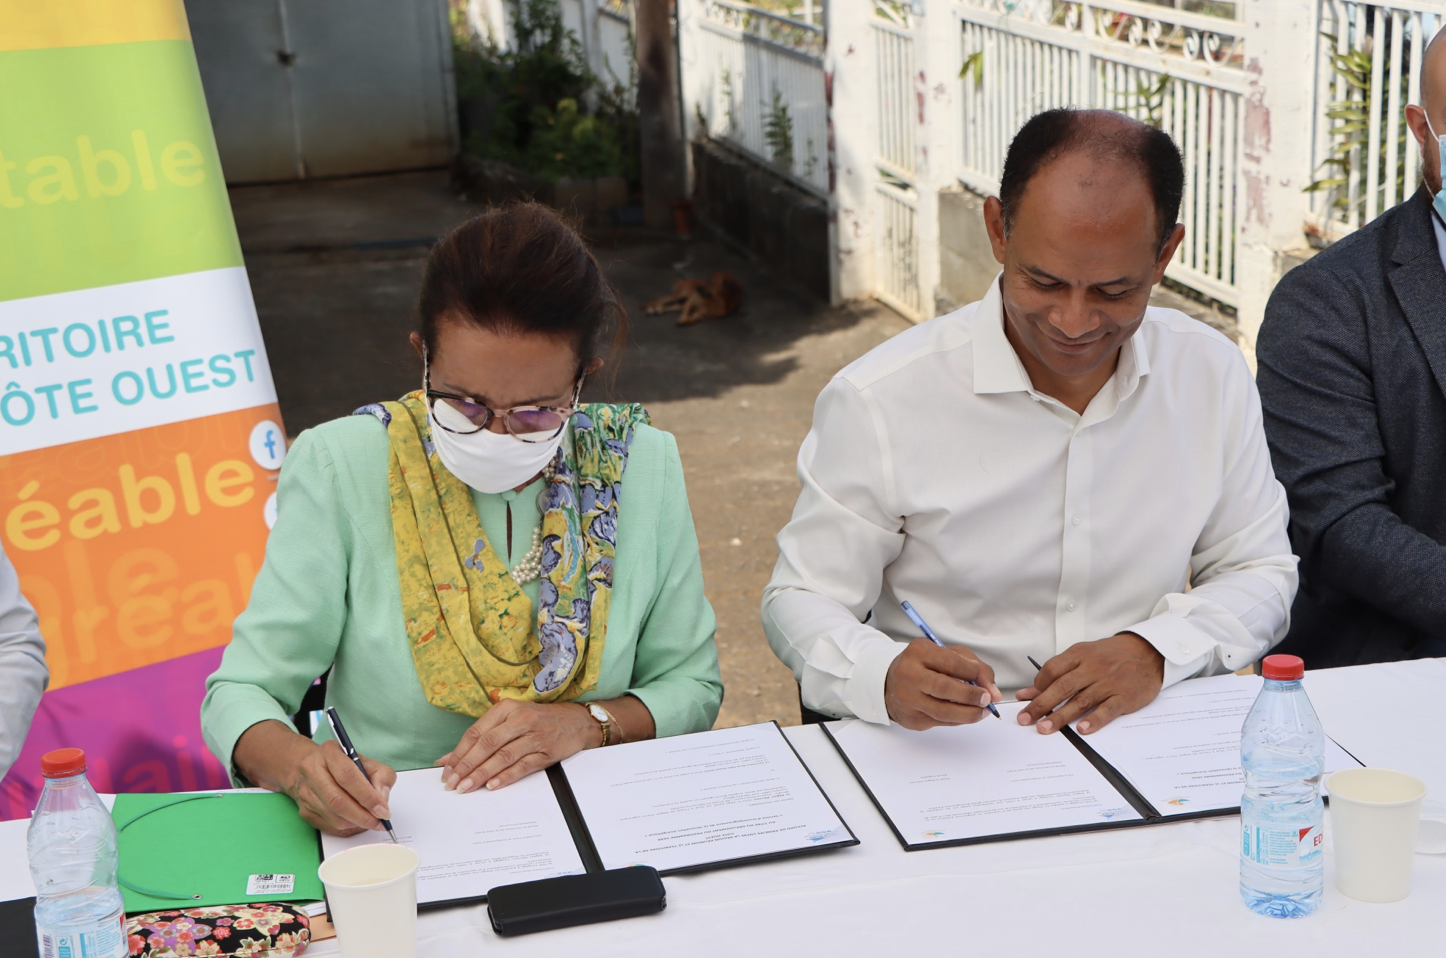 Signature de l'accord de principe entre la Région Réunion et le TCO pour le déploiement du Service d'Accompagnement à la Rénovation Énergétique (SARÉ)